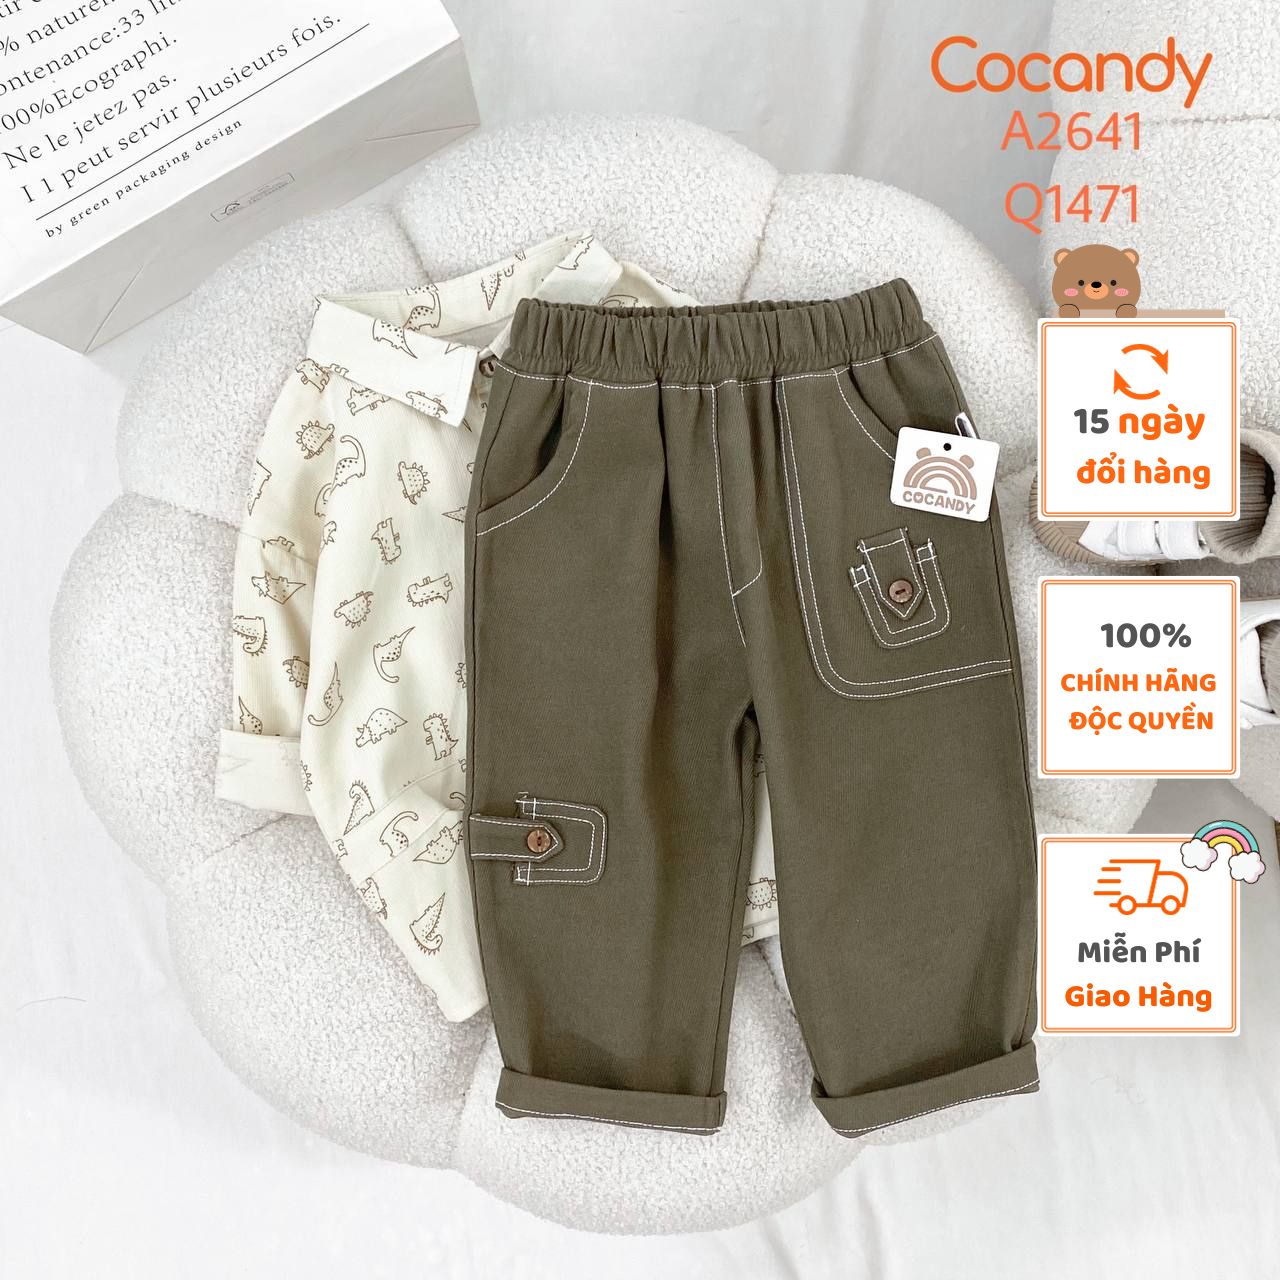 Quần cho bé -Quần dài XANH RÊU 2 túi nhỏ cho bé của COCANDY mã Q1471